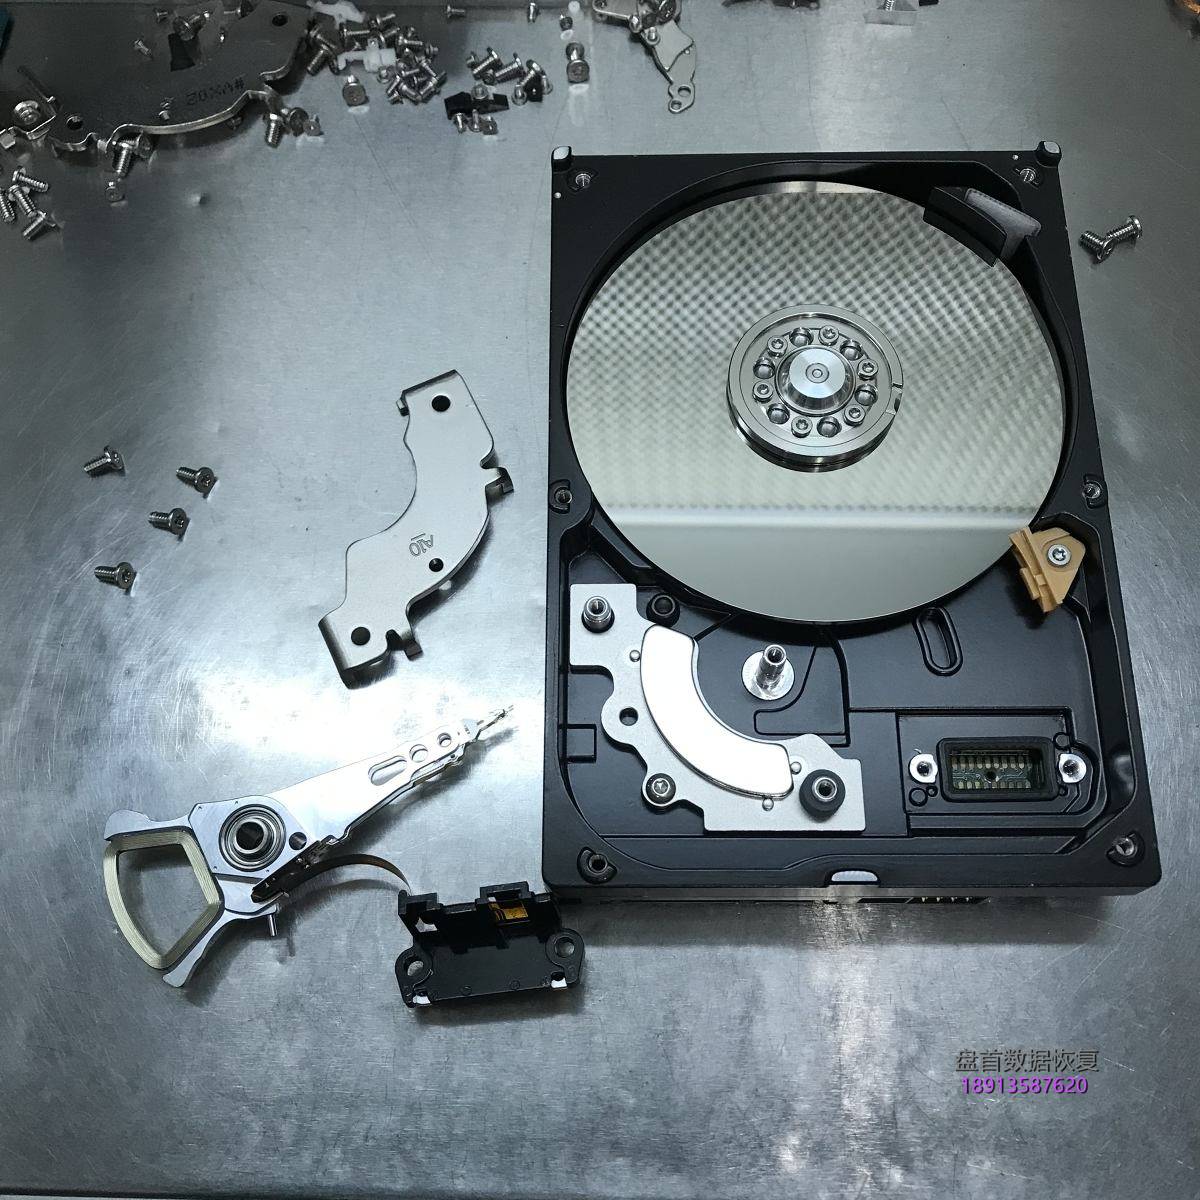 电脑主机箱被踢倒了导致WD3200AAJS台式机硬盘损坏进行开盘数据恢复成功